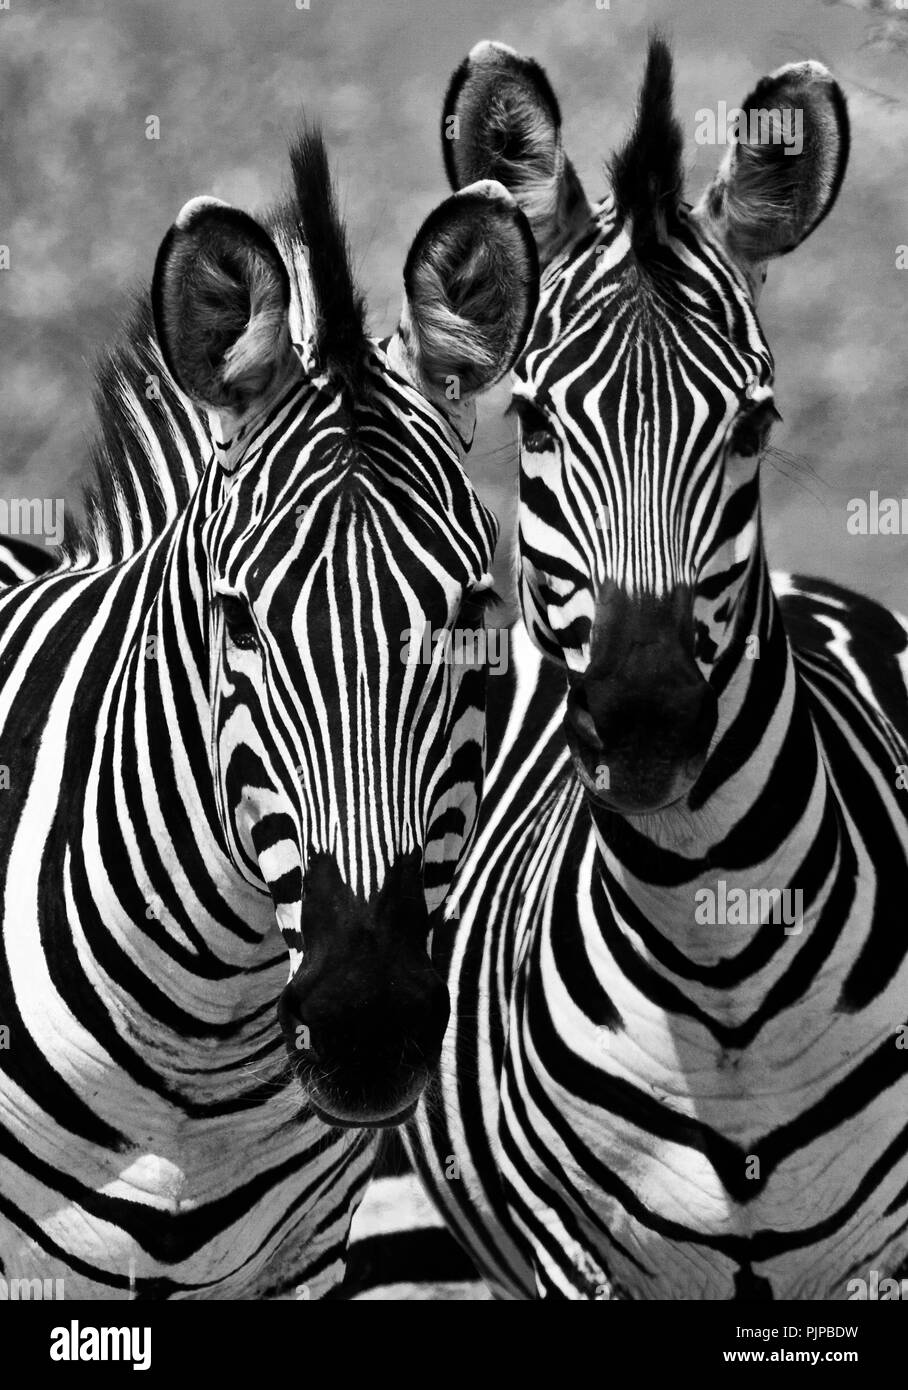 Obwohl oberflächlich ähnlichen jedes zebra Streifenmuster ist einzigartig, notwendig für individulas innerhalb der Herde erkannt zu werden. Dies ist besonders Imp Stockfoto